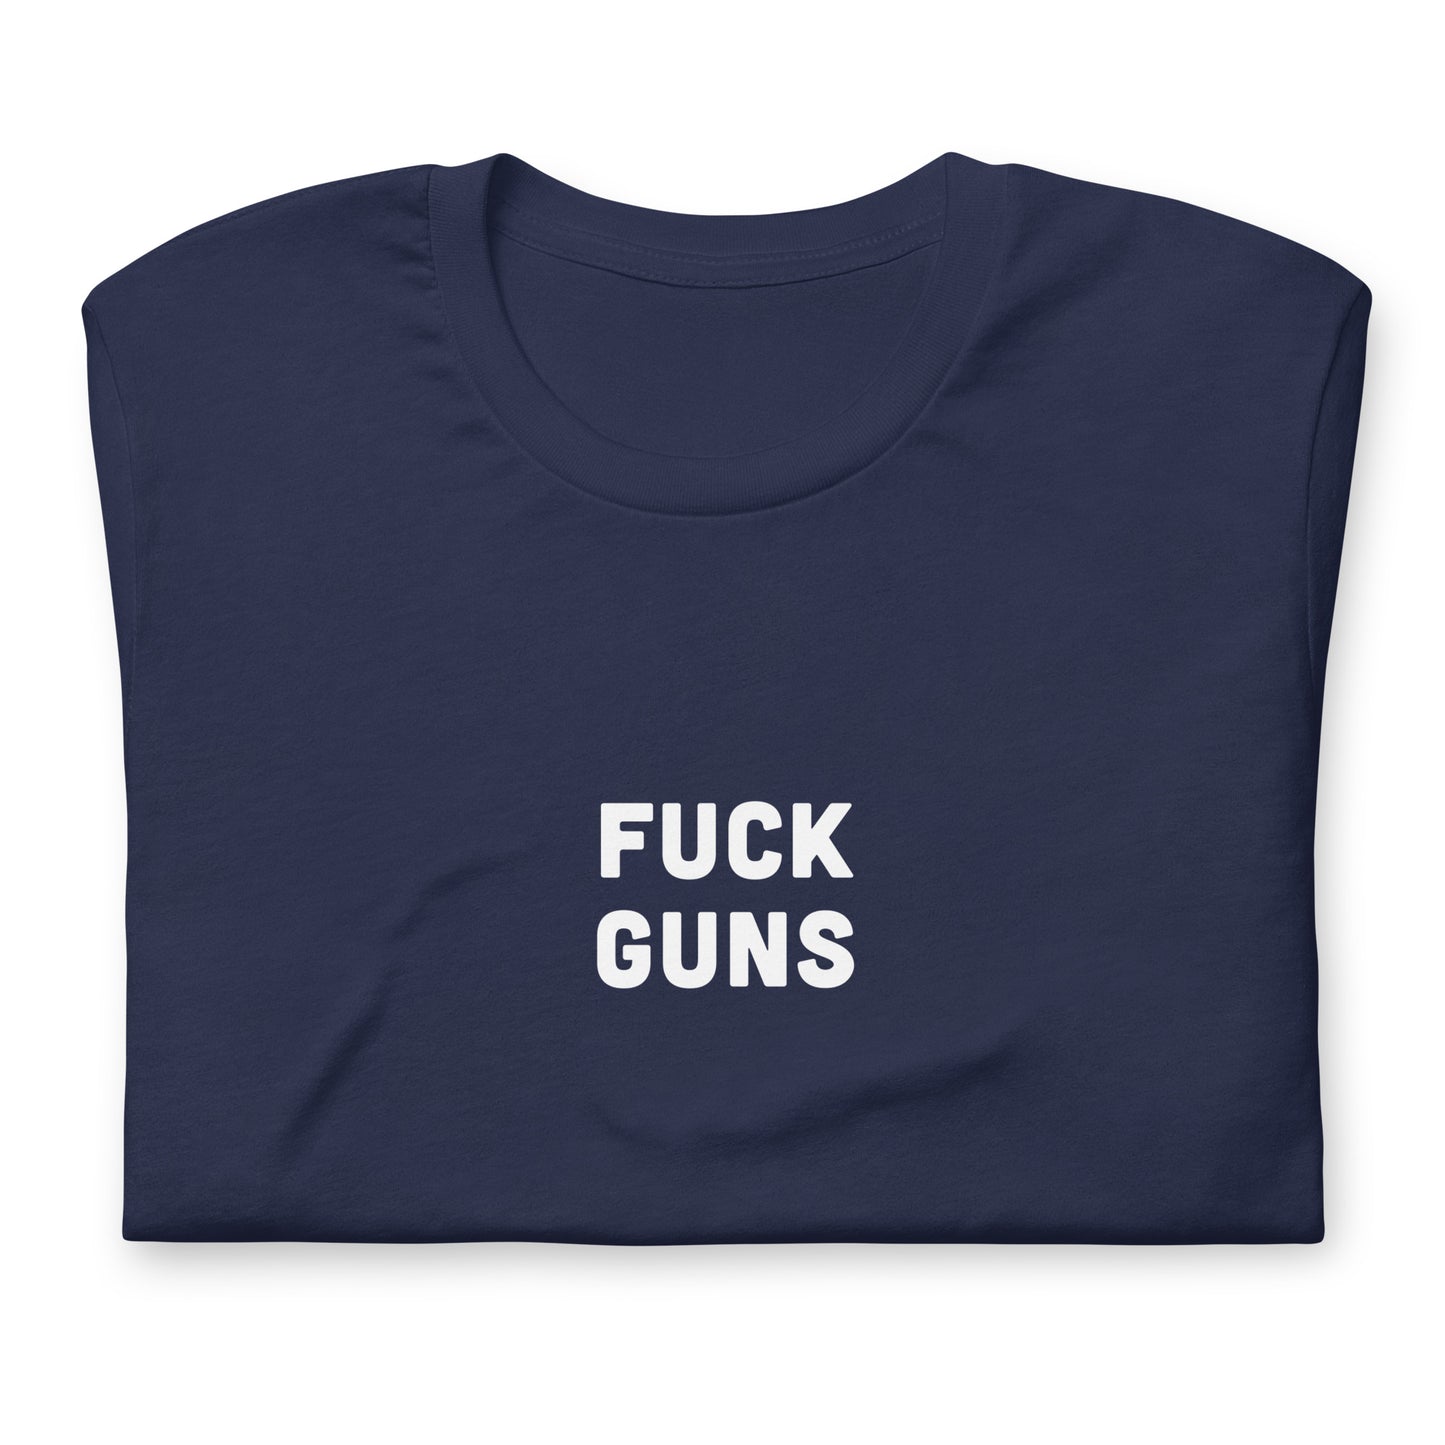 Fuck Guns T-Shirt Size M Color Black